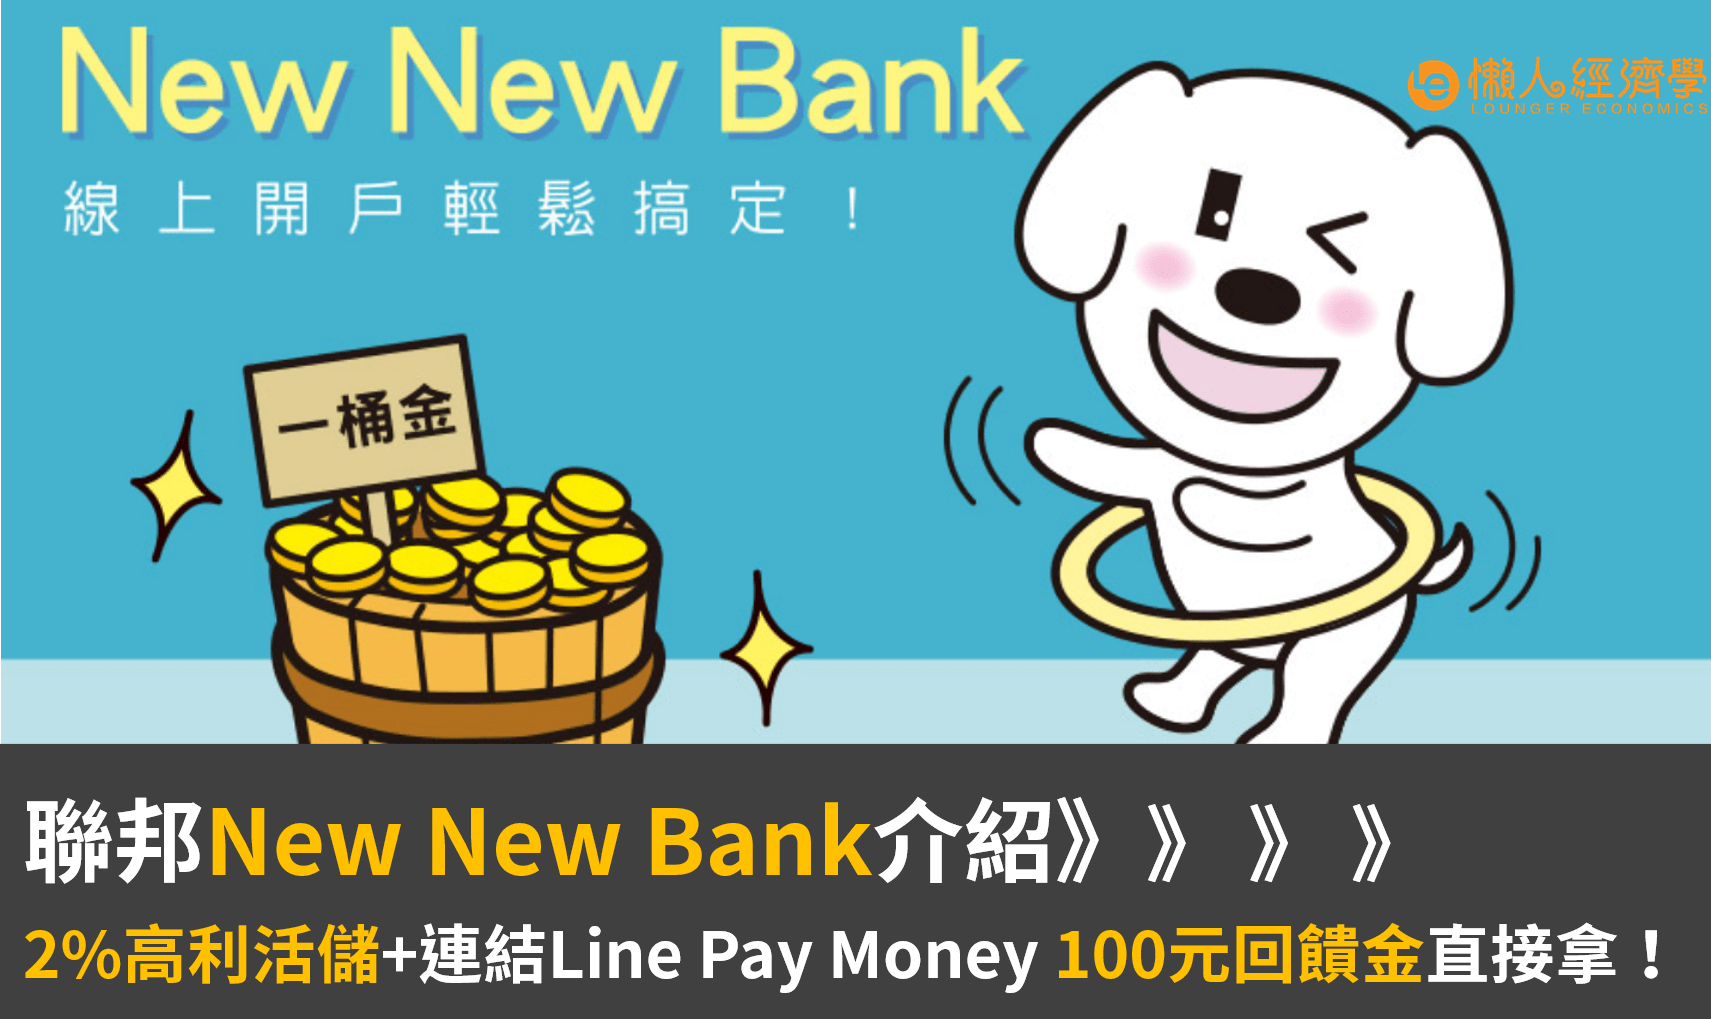 聯邦NEW NEW BANK